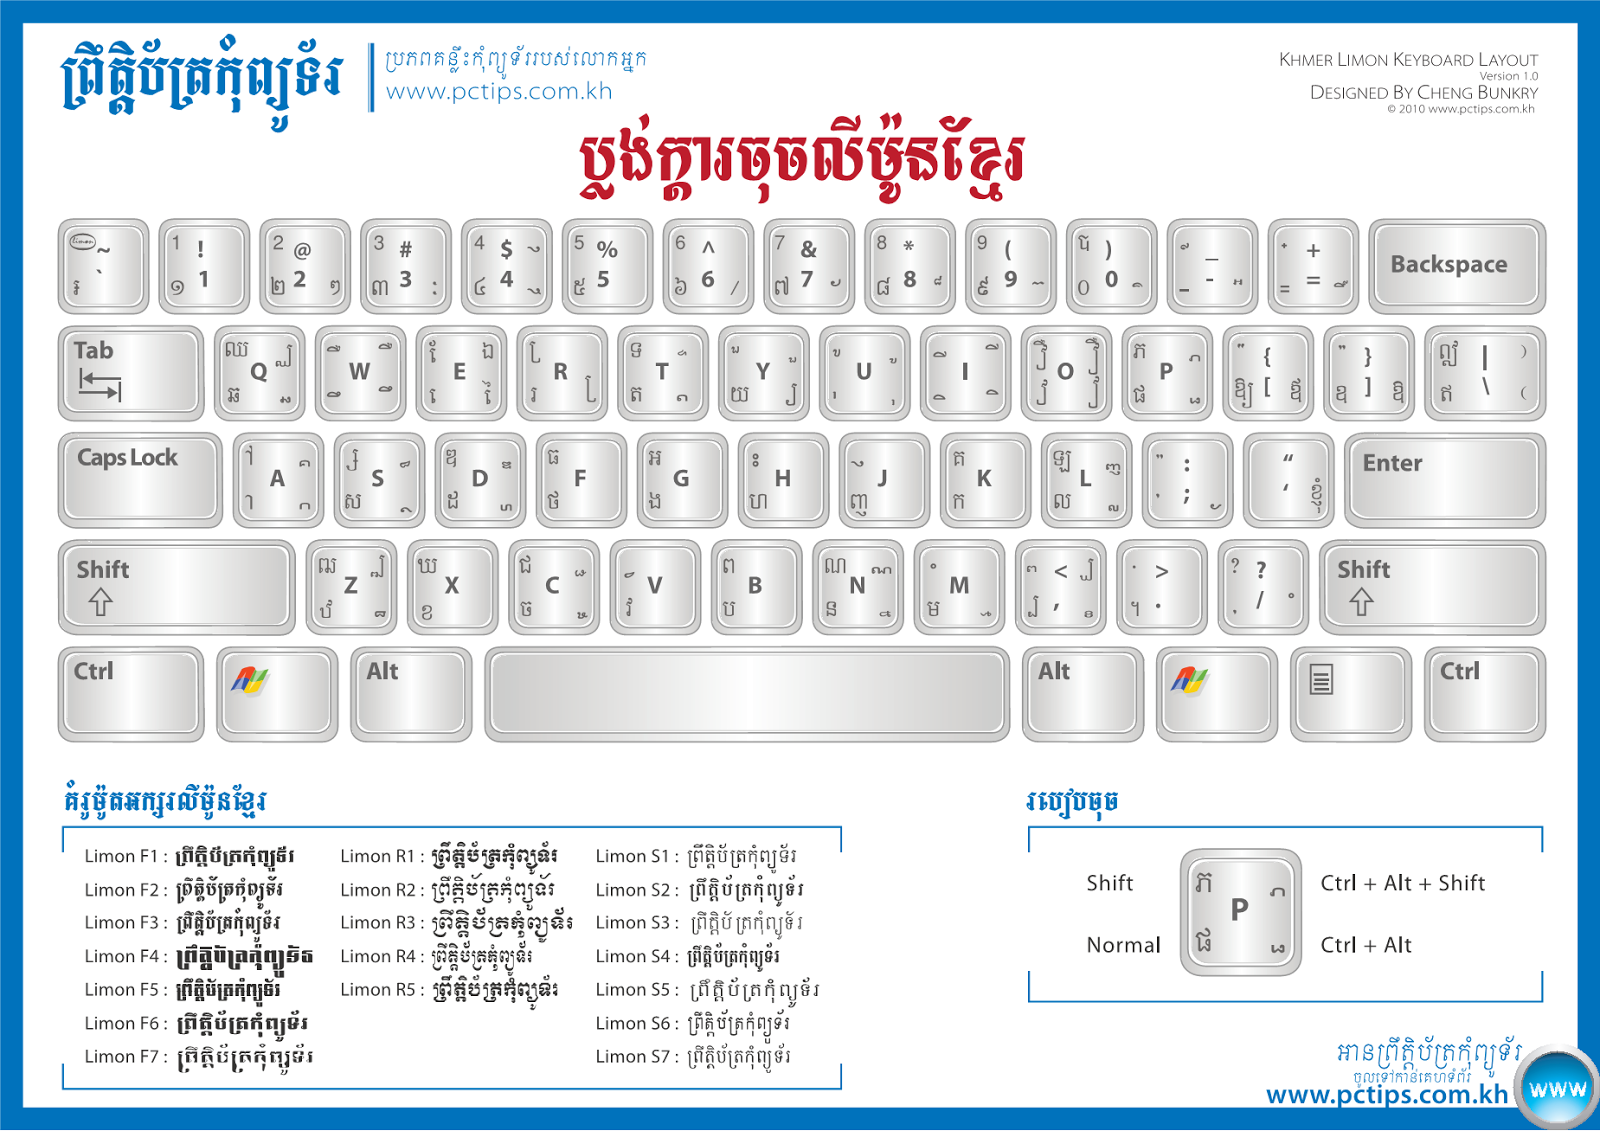 khmer unicode for windows 10